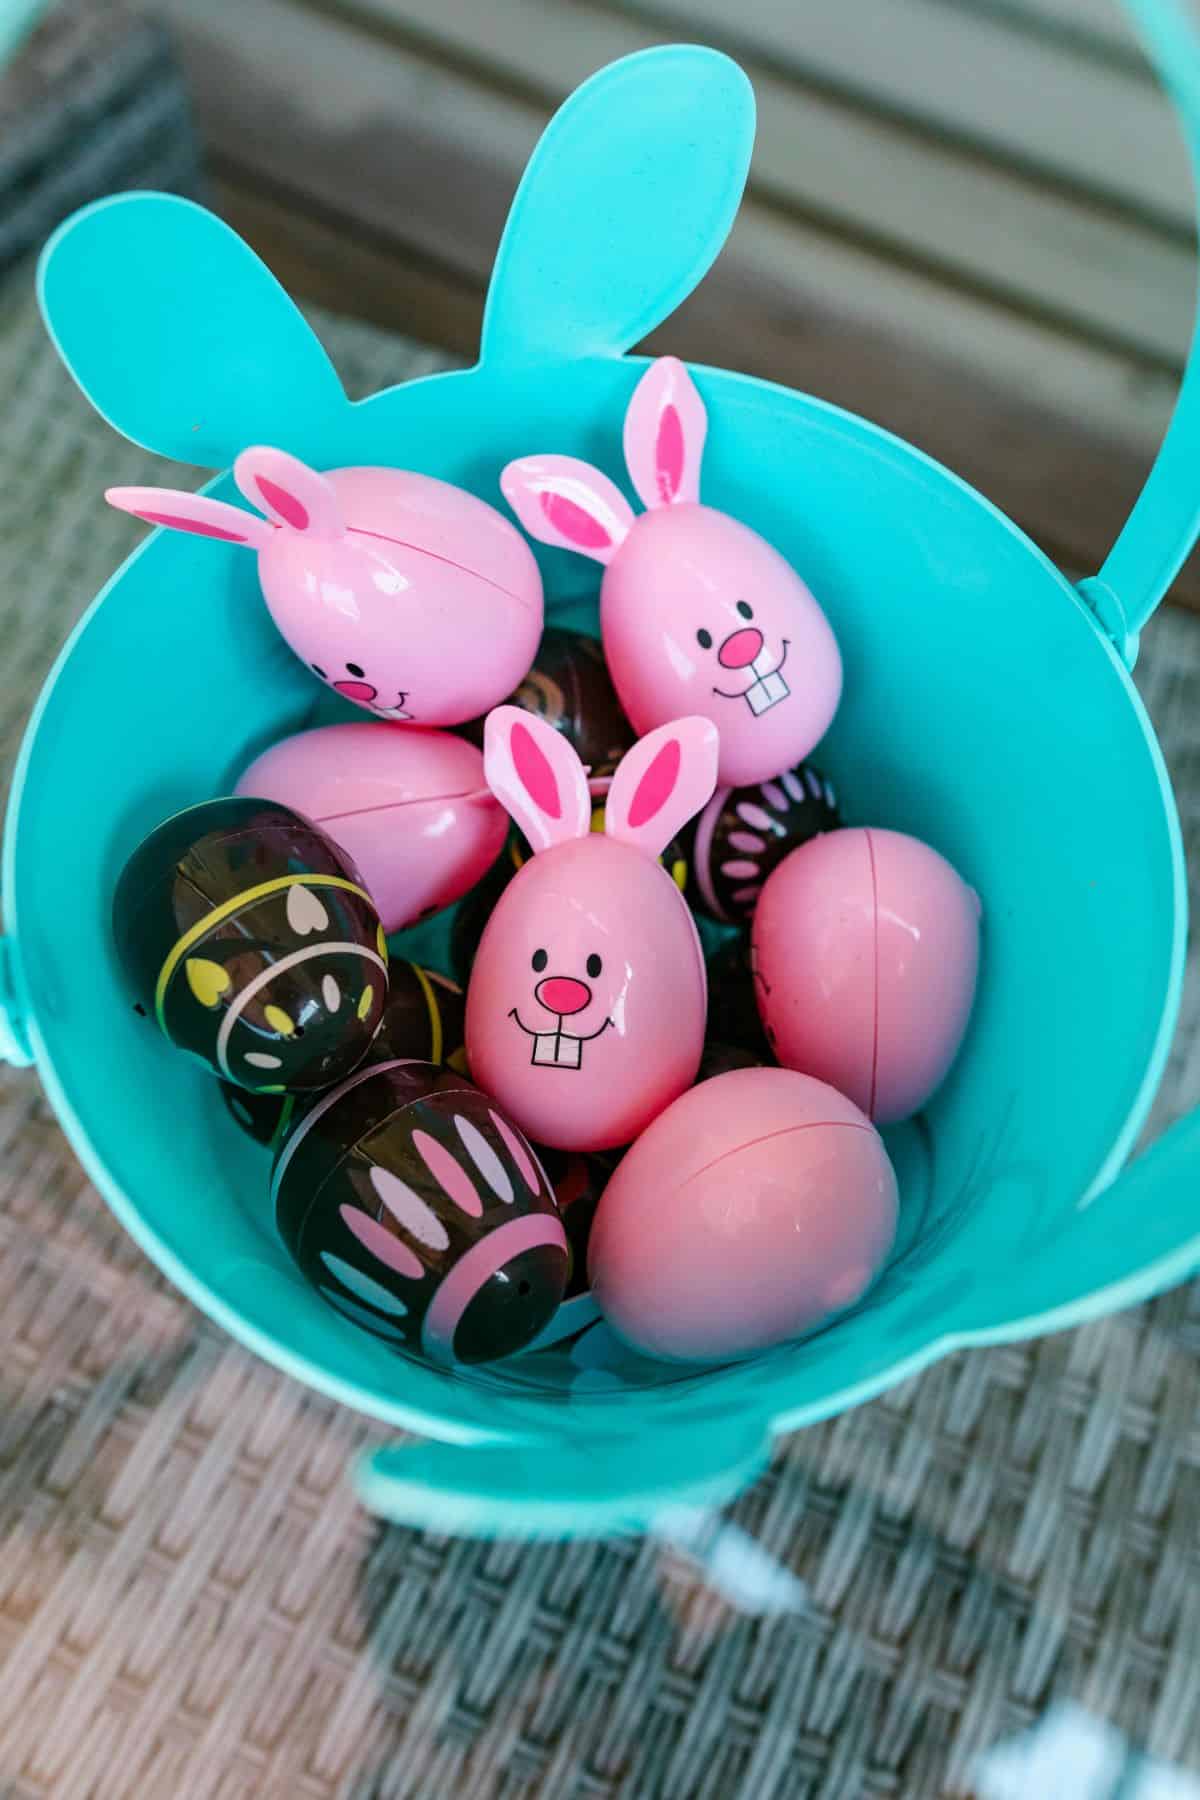 5 Fun Easter Gifts